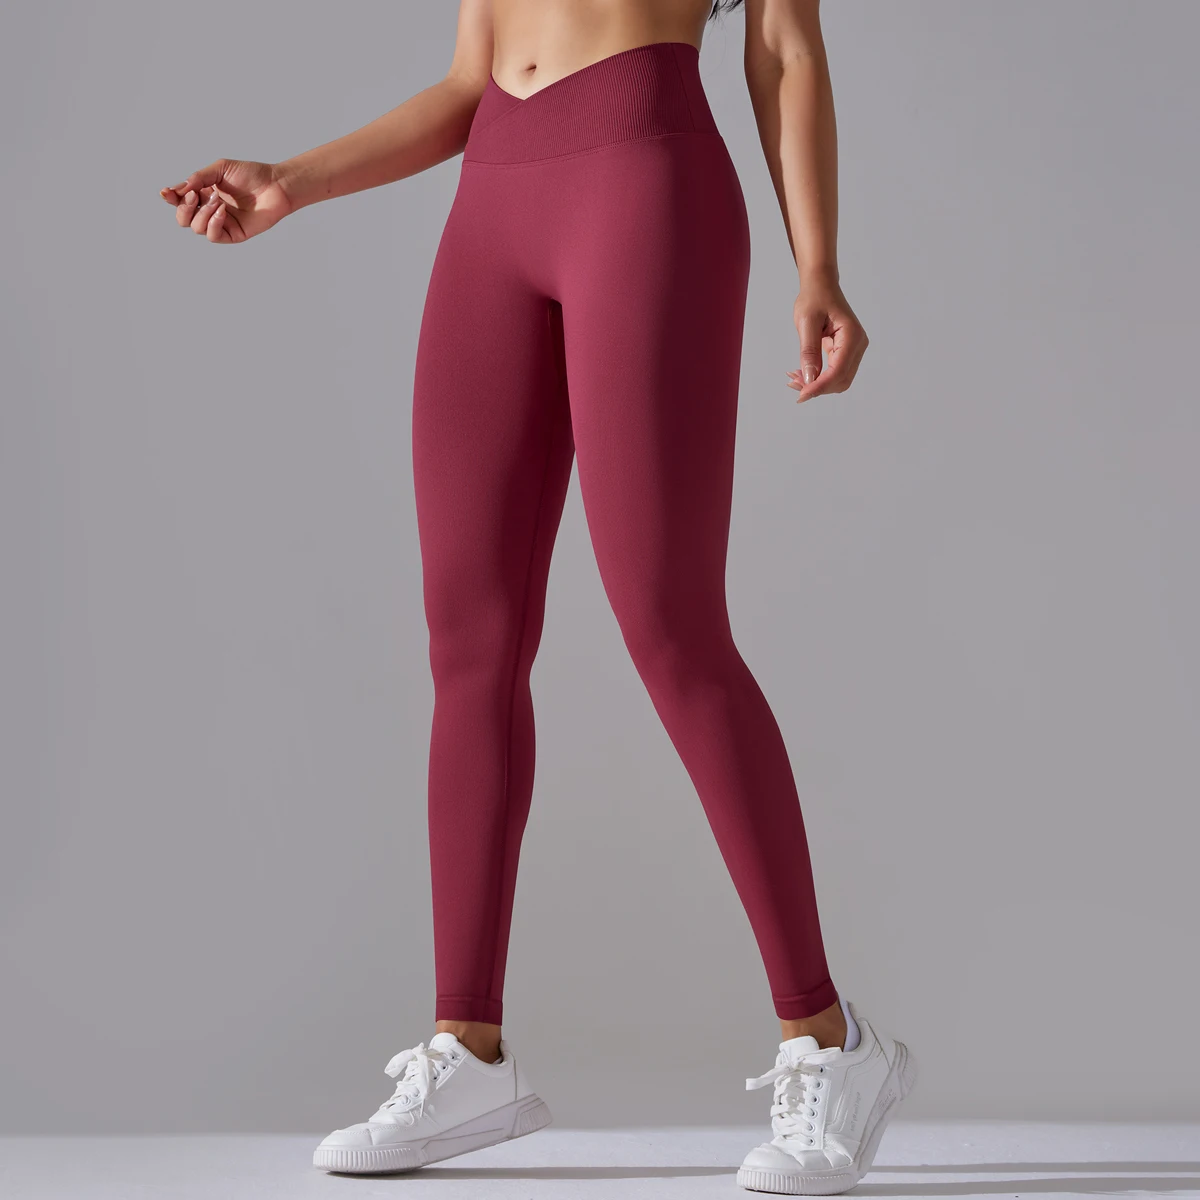 Seamless Yoga Pant Cross Over Waistband Sports Fitness Legging Women High  Waist Gym Scrunch Butt Running Workout Leggings